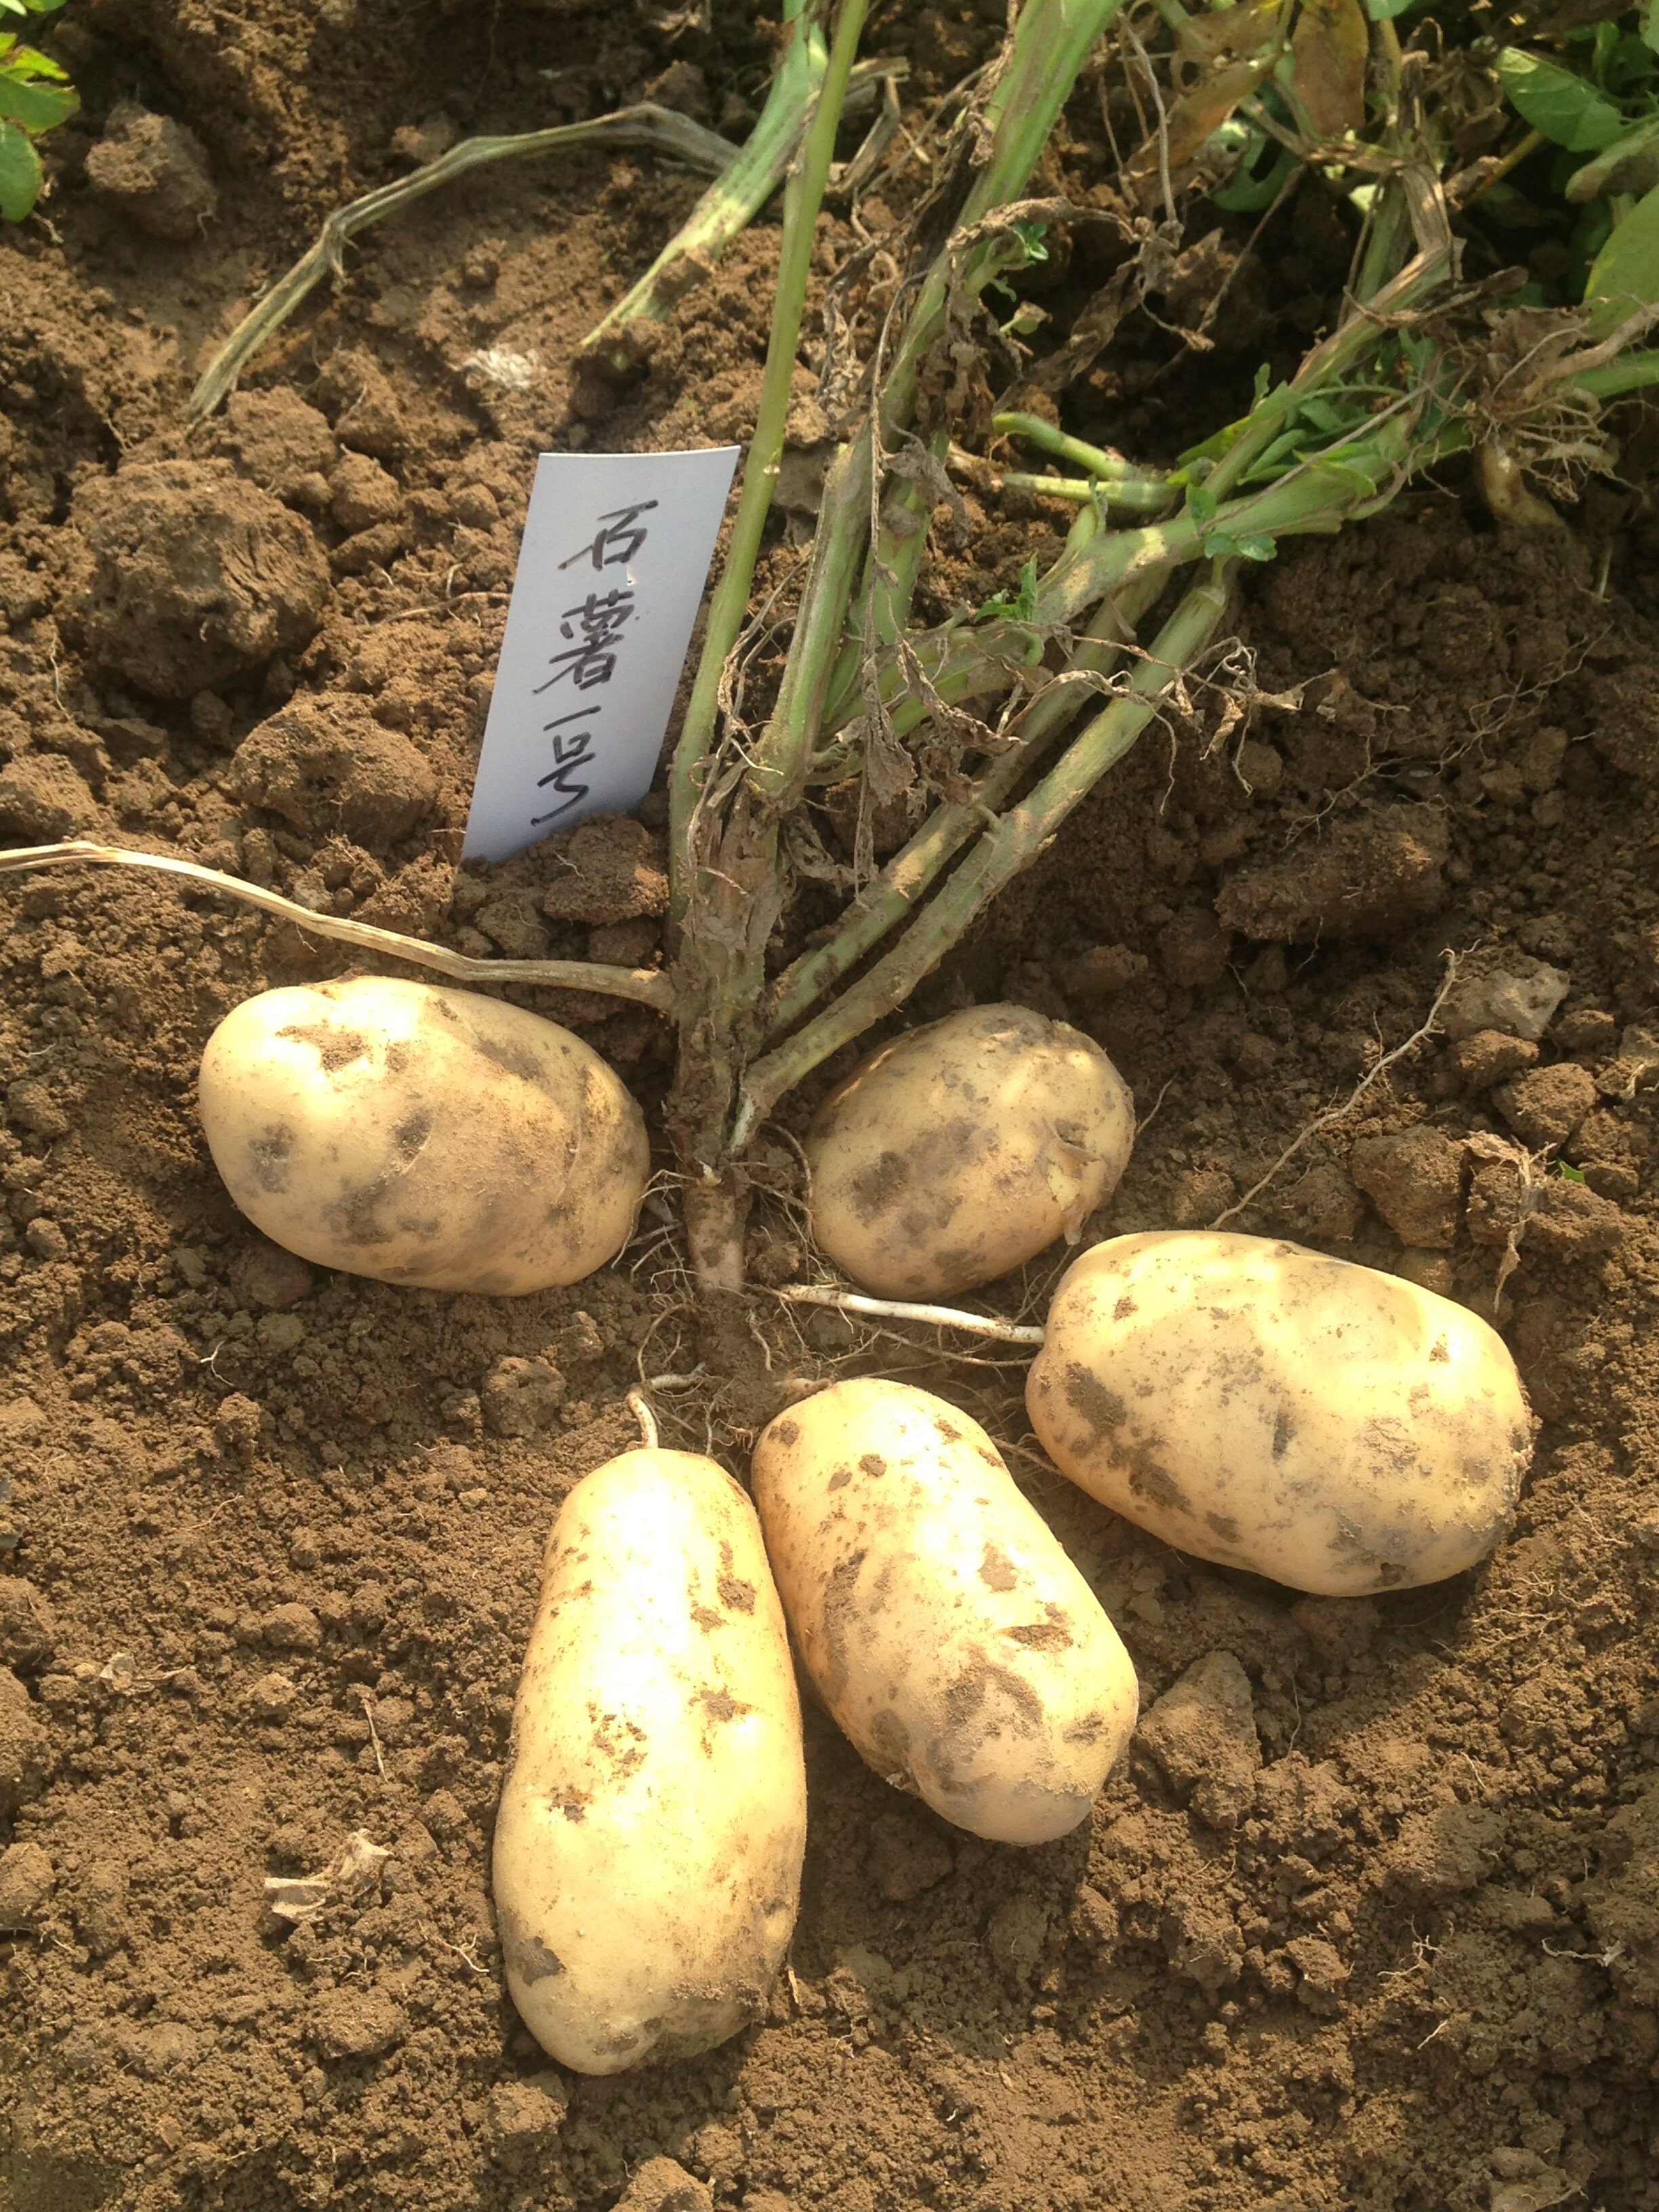 1_馬鈴薯新品種石薯1號實地測產畝產達到2857_3公斤_proc.jpg